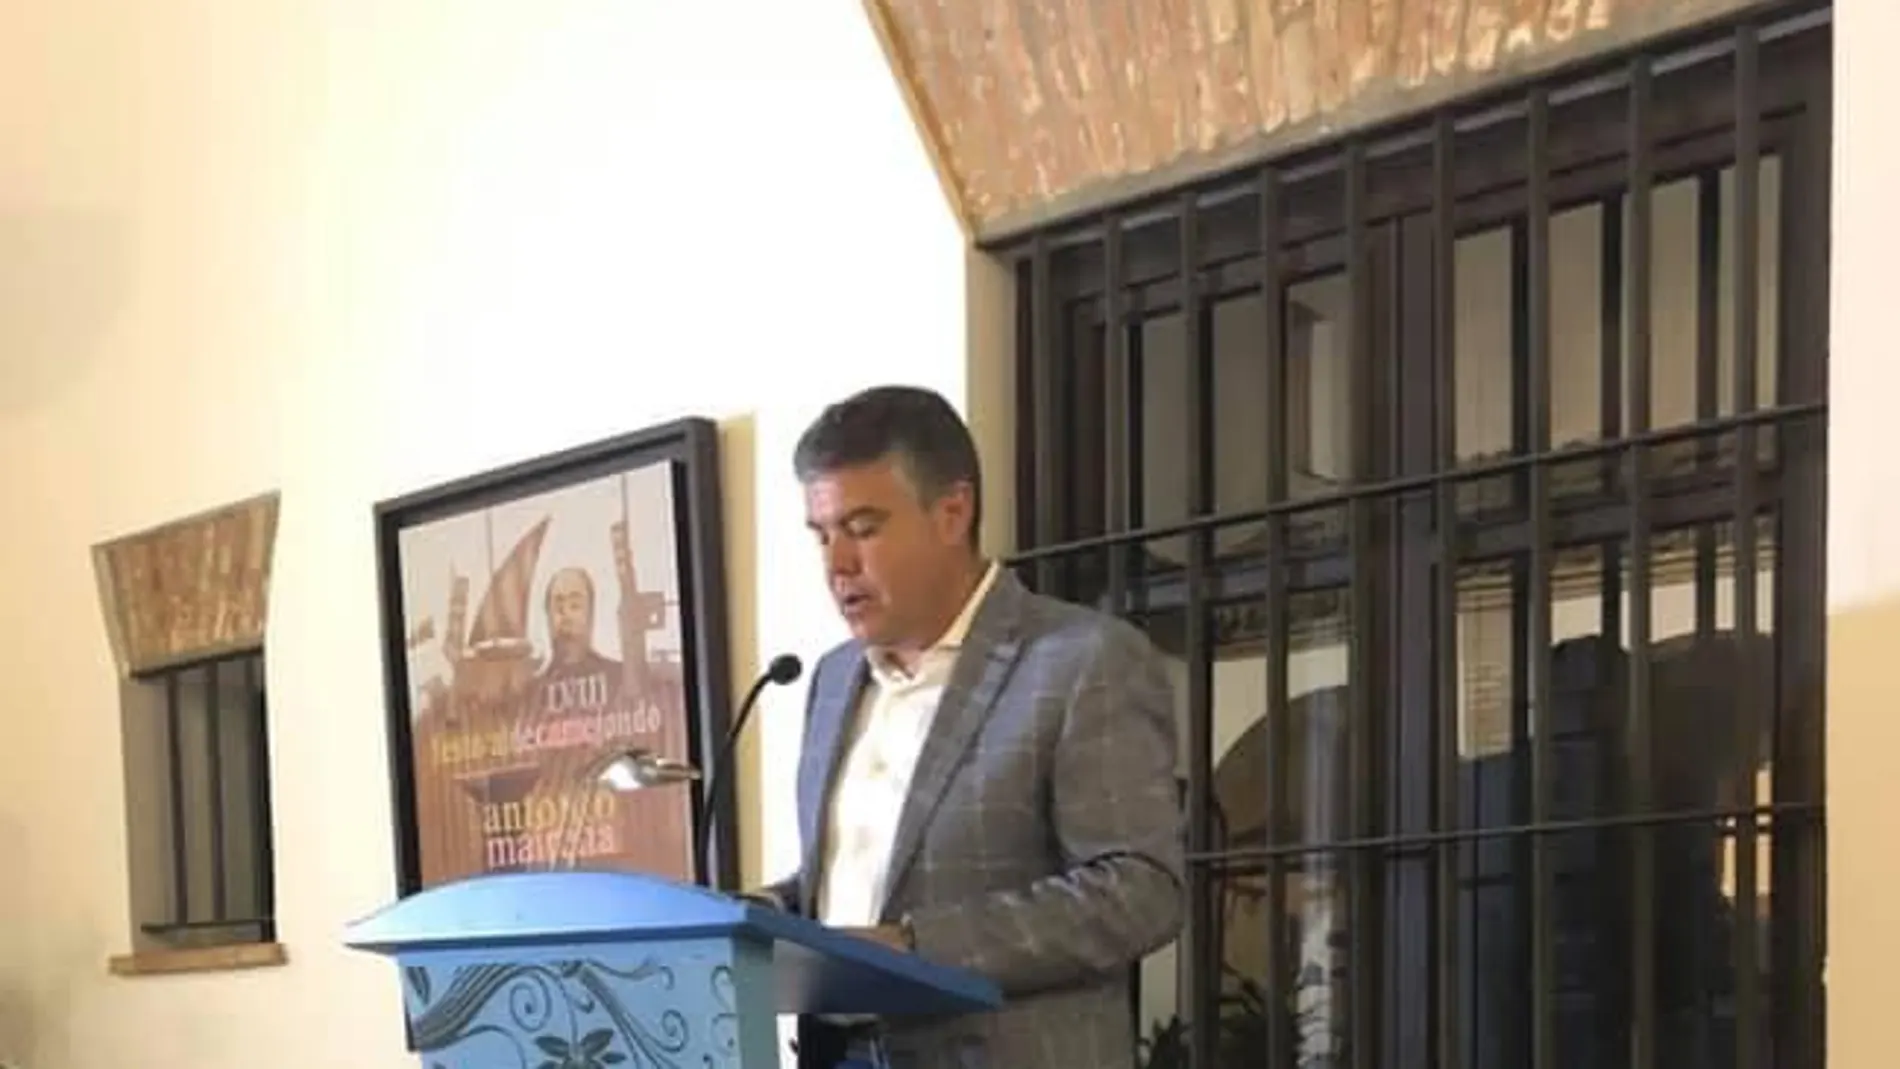 El alcalde de Mairena del Alcor, Juanma López, ayer en el acto inaugural del Festival de Cante Jondo Antonio Mairena / La Razón